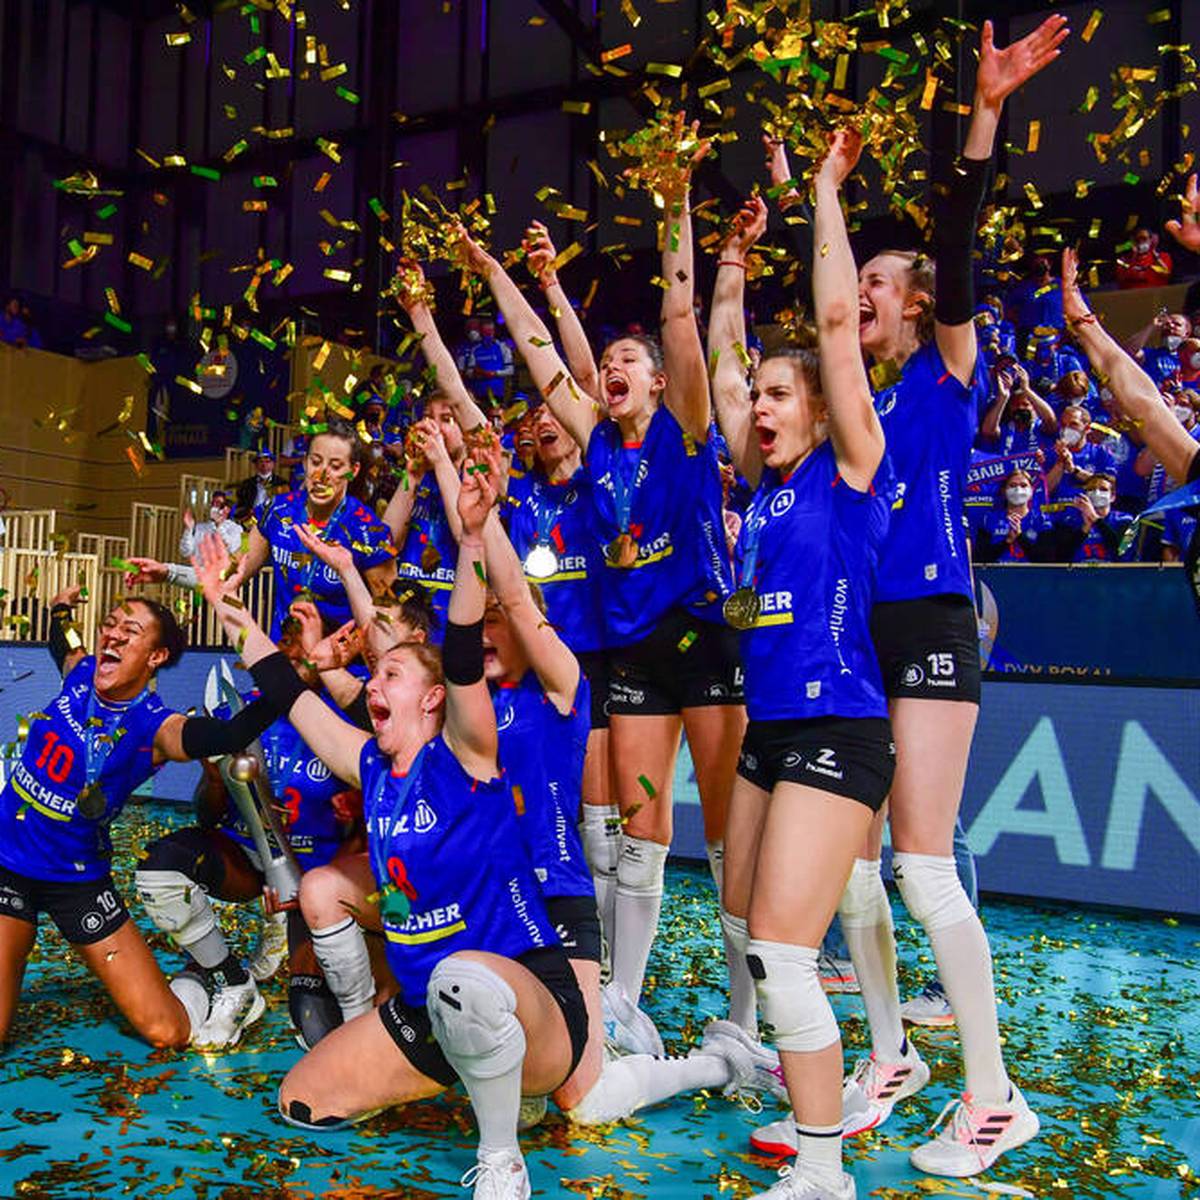 Mit dem Einstieg der Bundesligisten geht der DVV-Pokal in die heiße Phase. Der Titelverteidiger Allianz MTV Stuttgart startet mit einem Heimspiel. Zwei frühere Titelträger duellieren sich mit Regionalpokalsiegern.